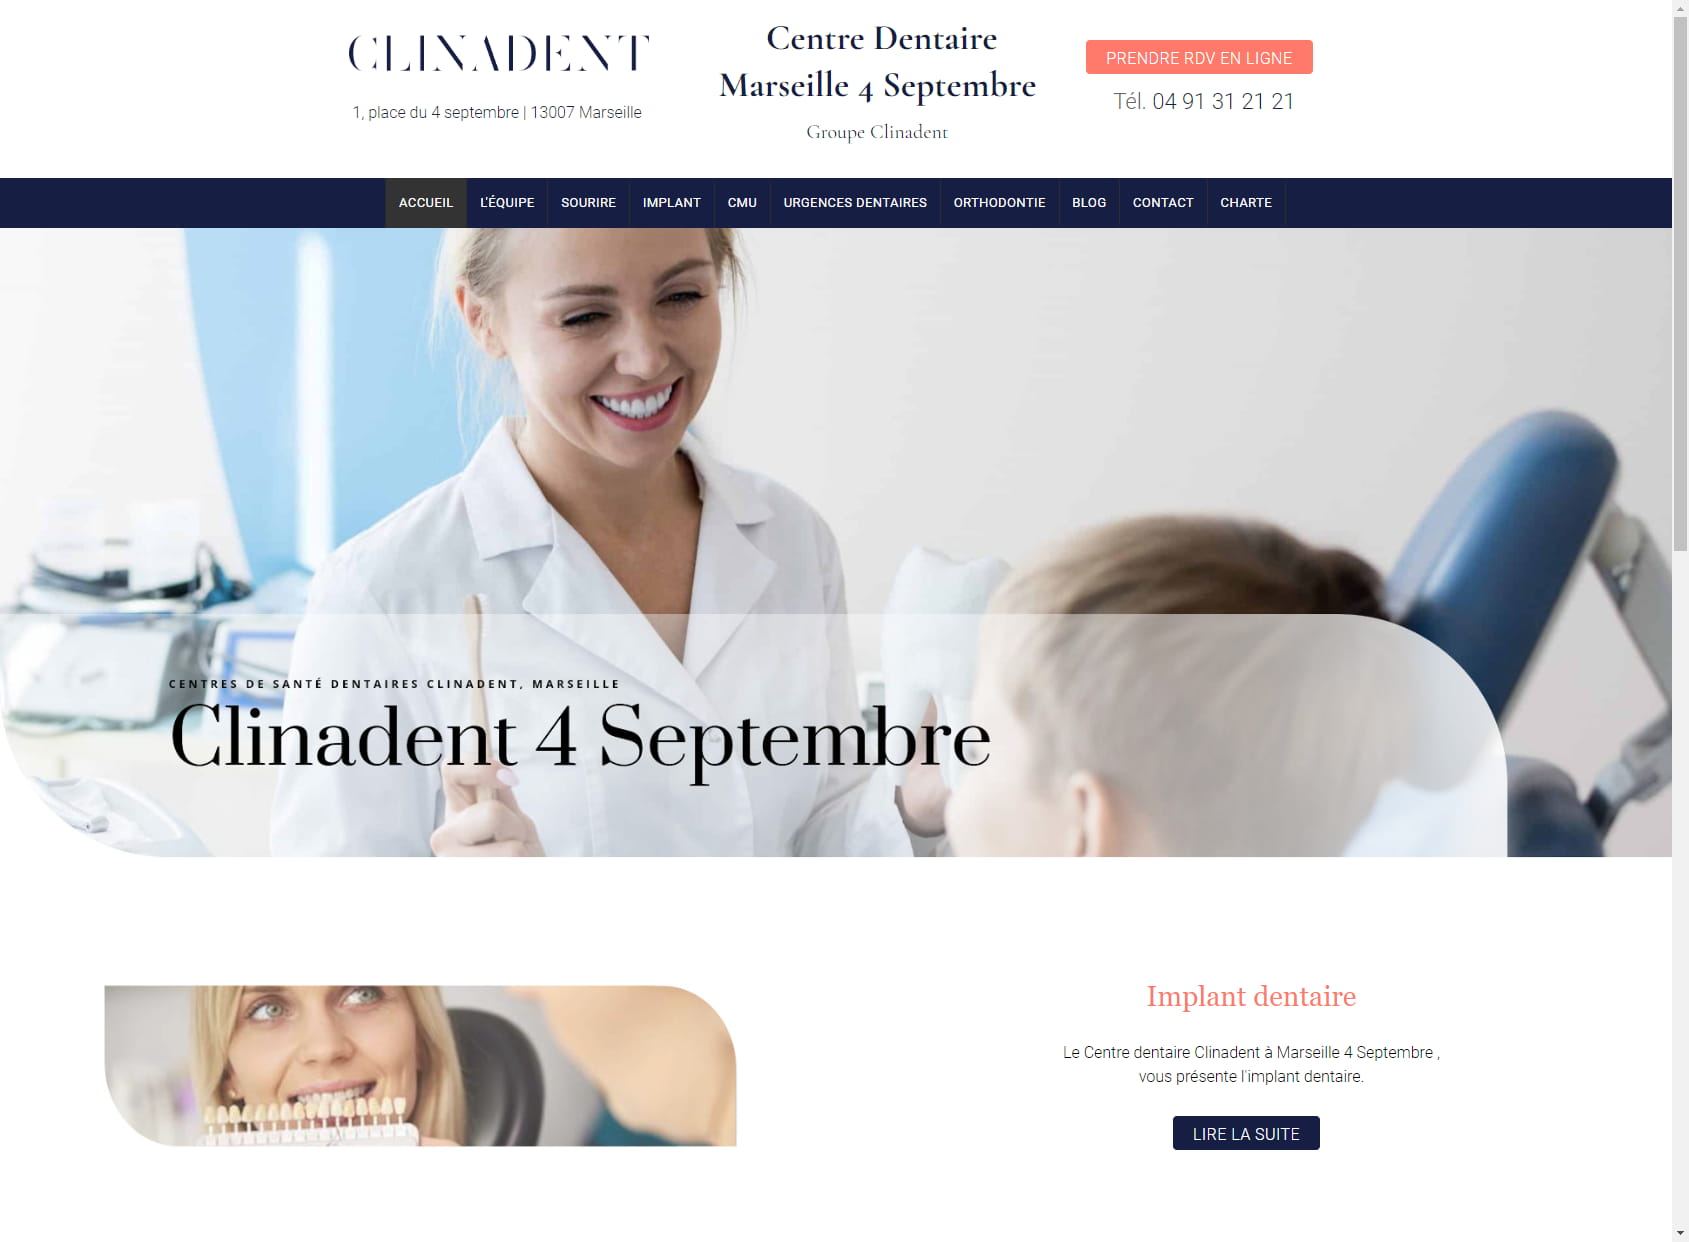 Clinadent - Centre Dentaire Marseille 7, 4 septembre